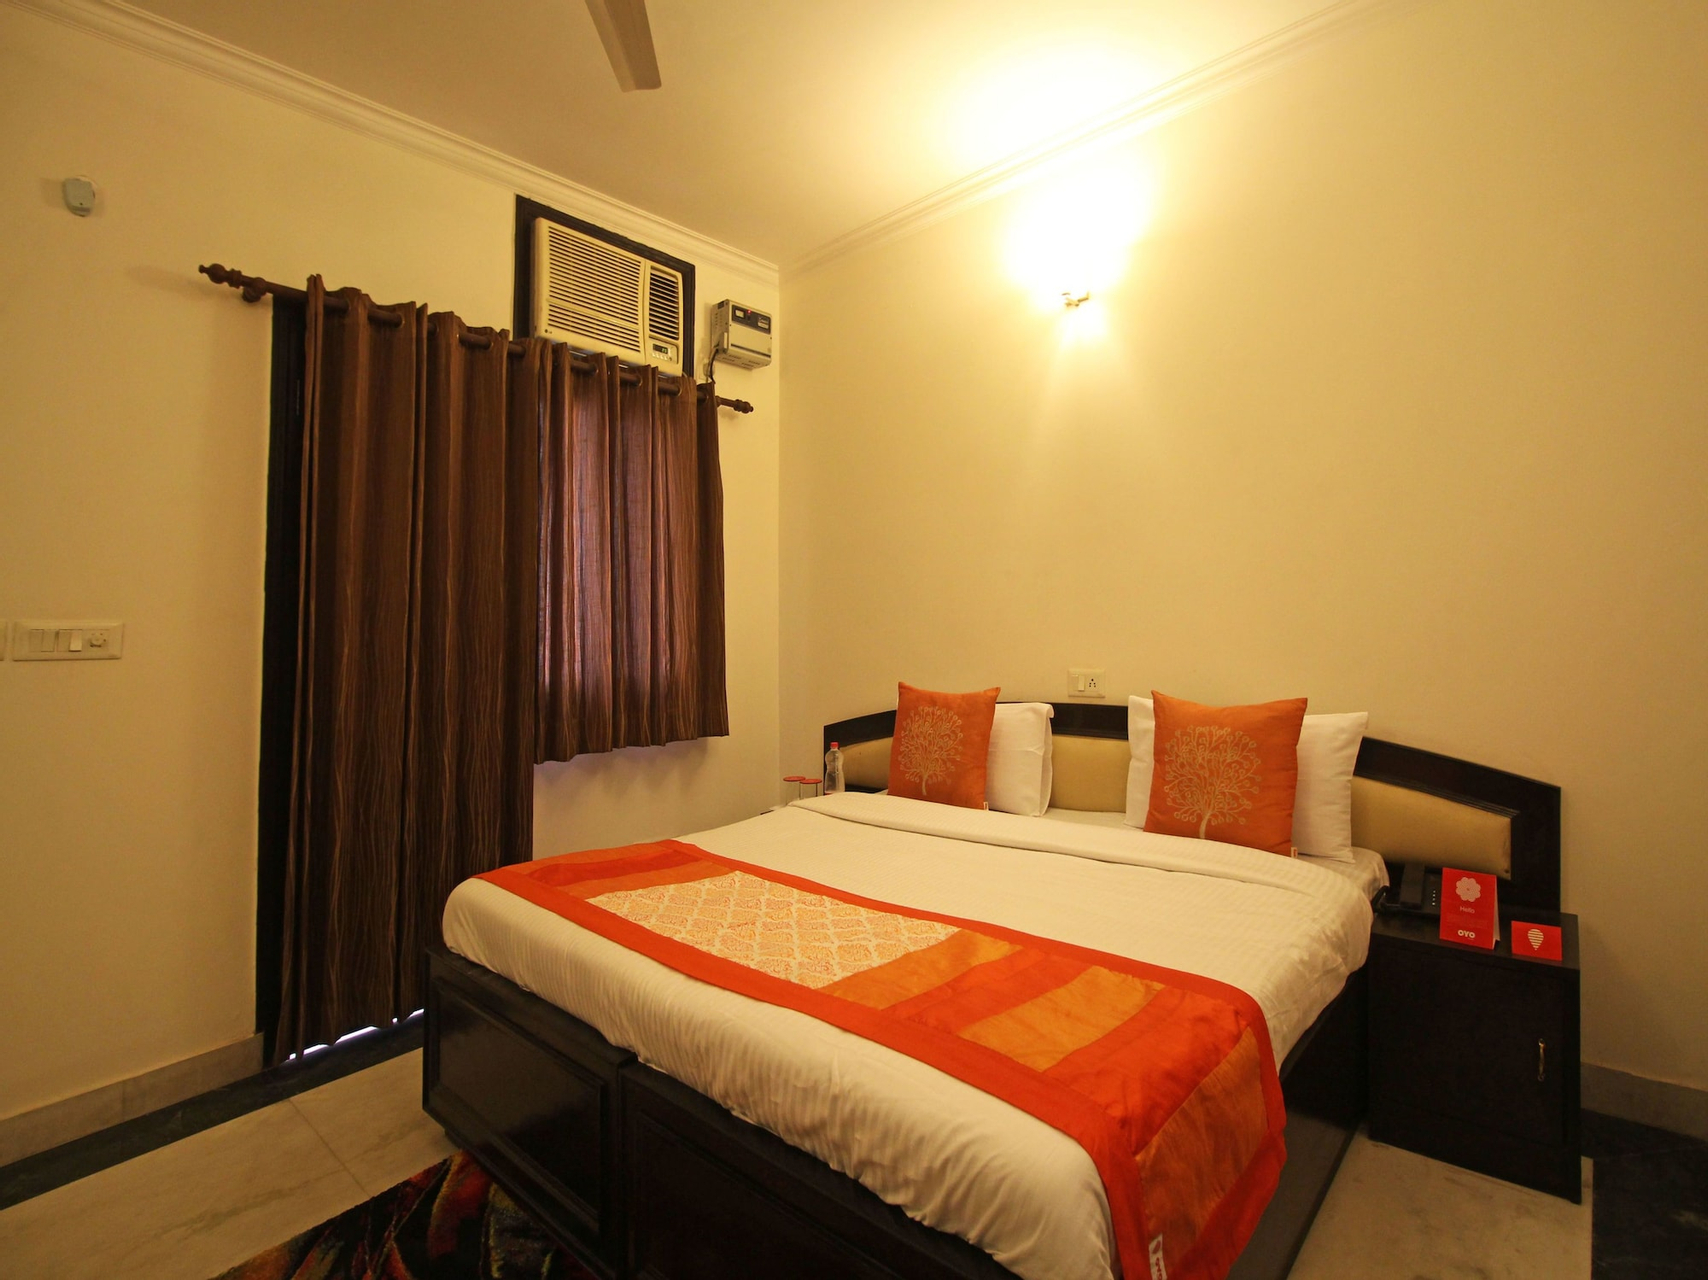 Bedroom, OYO 5741 Grand Highway, Faridabad